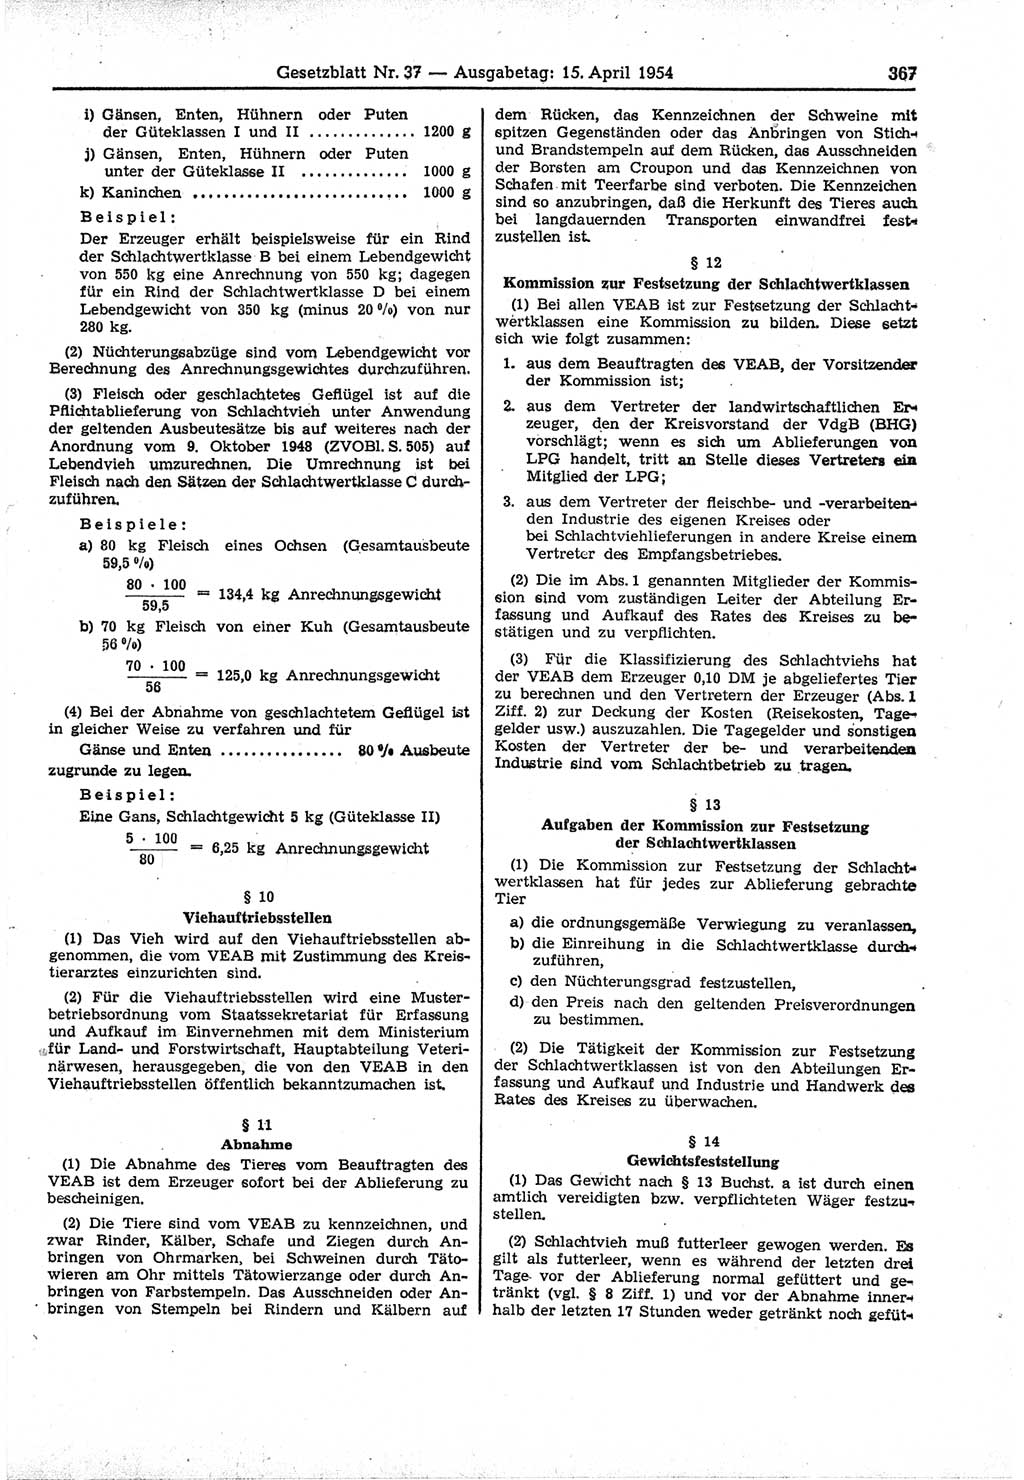 Gesetzblatt (GBl.) der Deutschen Demokratischen Republik (DDR) 1954, Seite 367 (GBl. DDR 1954, S. 367)